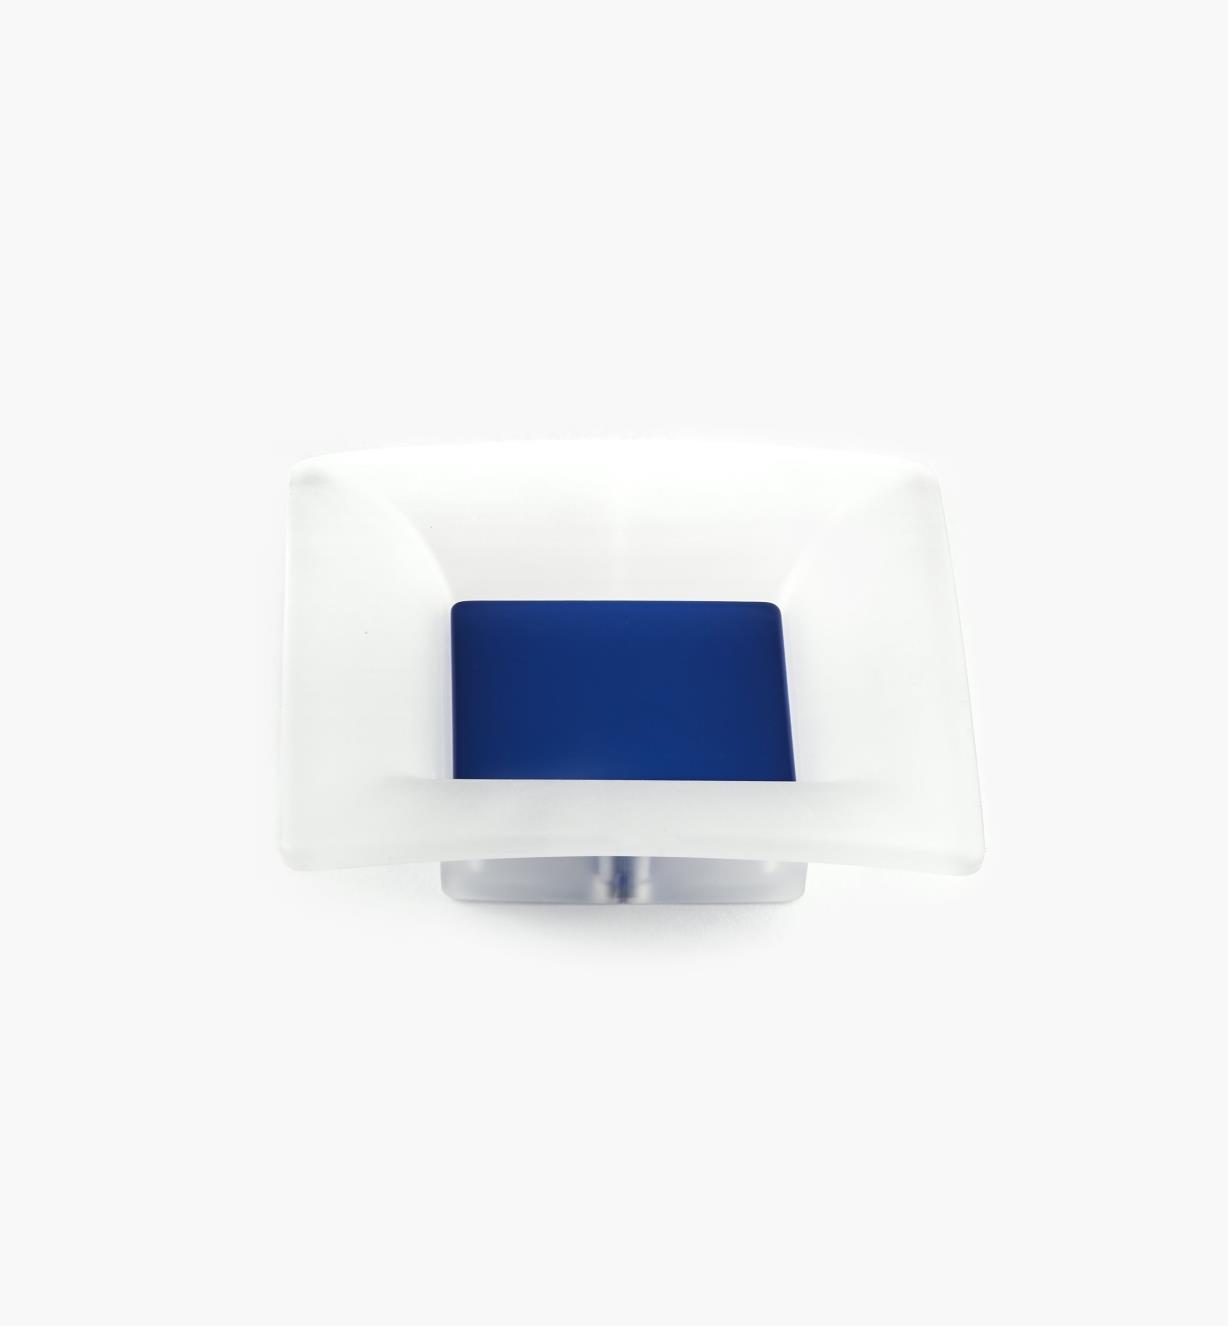 00W5412 - Poignée carrée, 32 mm, série Bungee, bleu